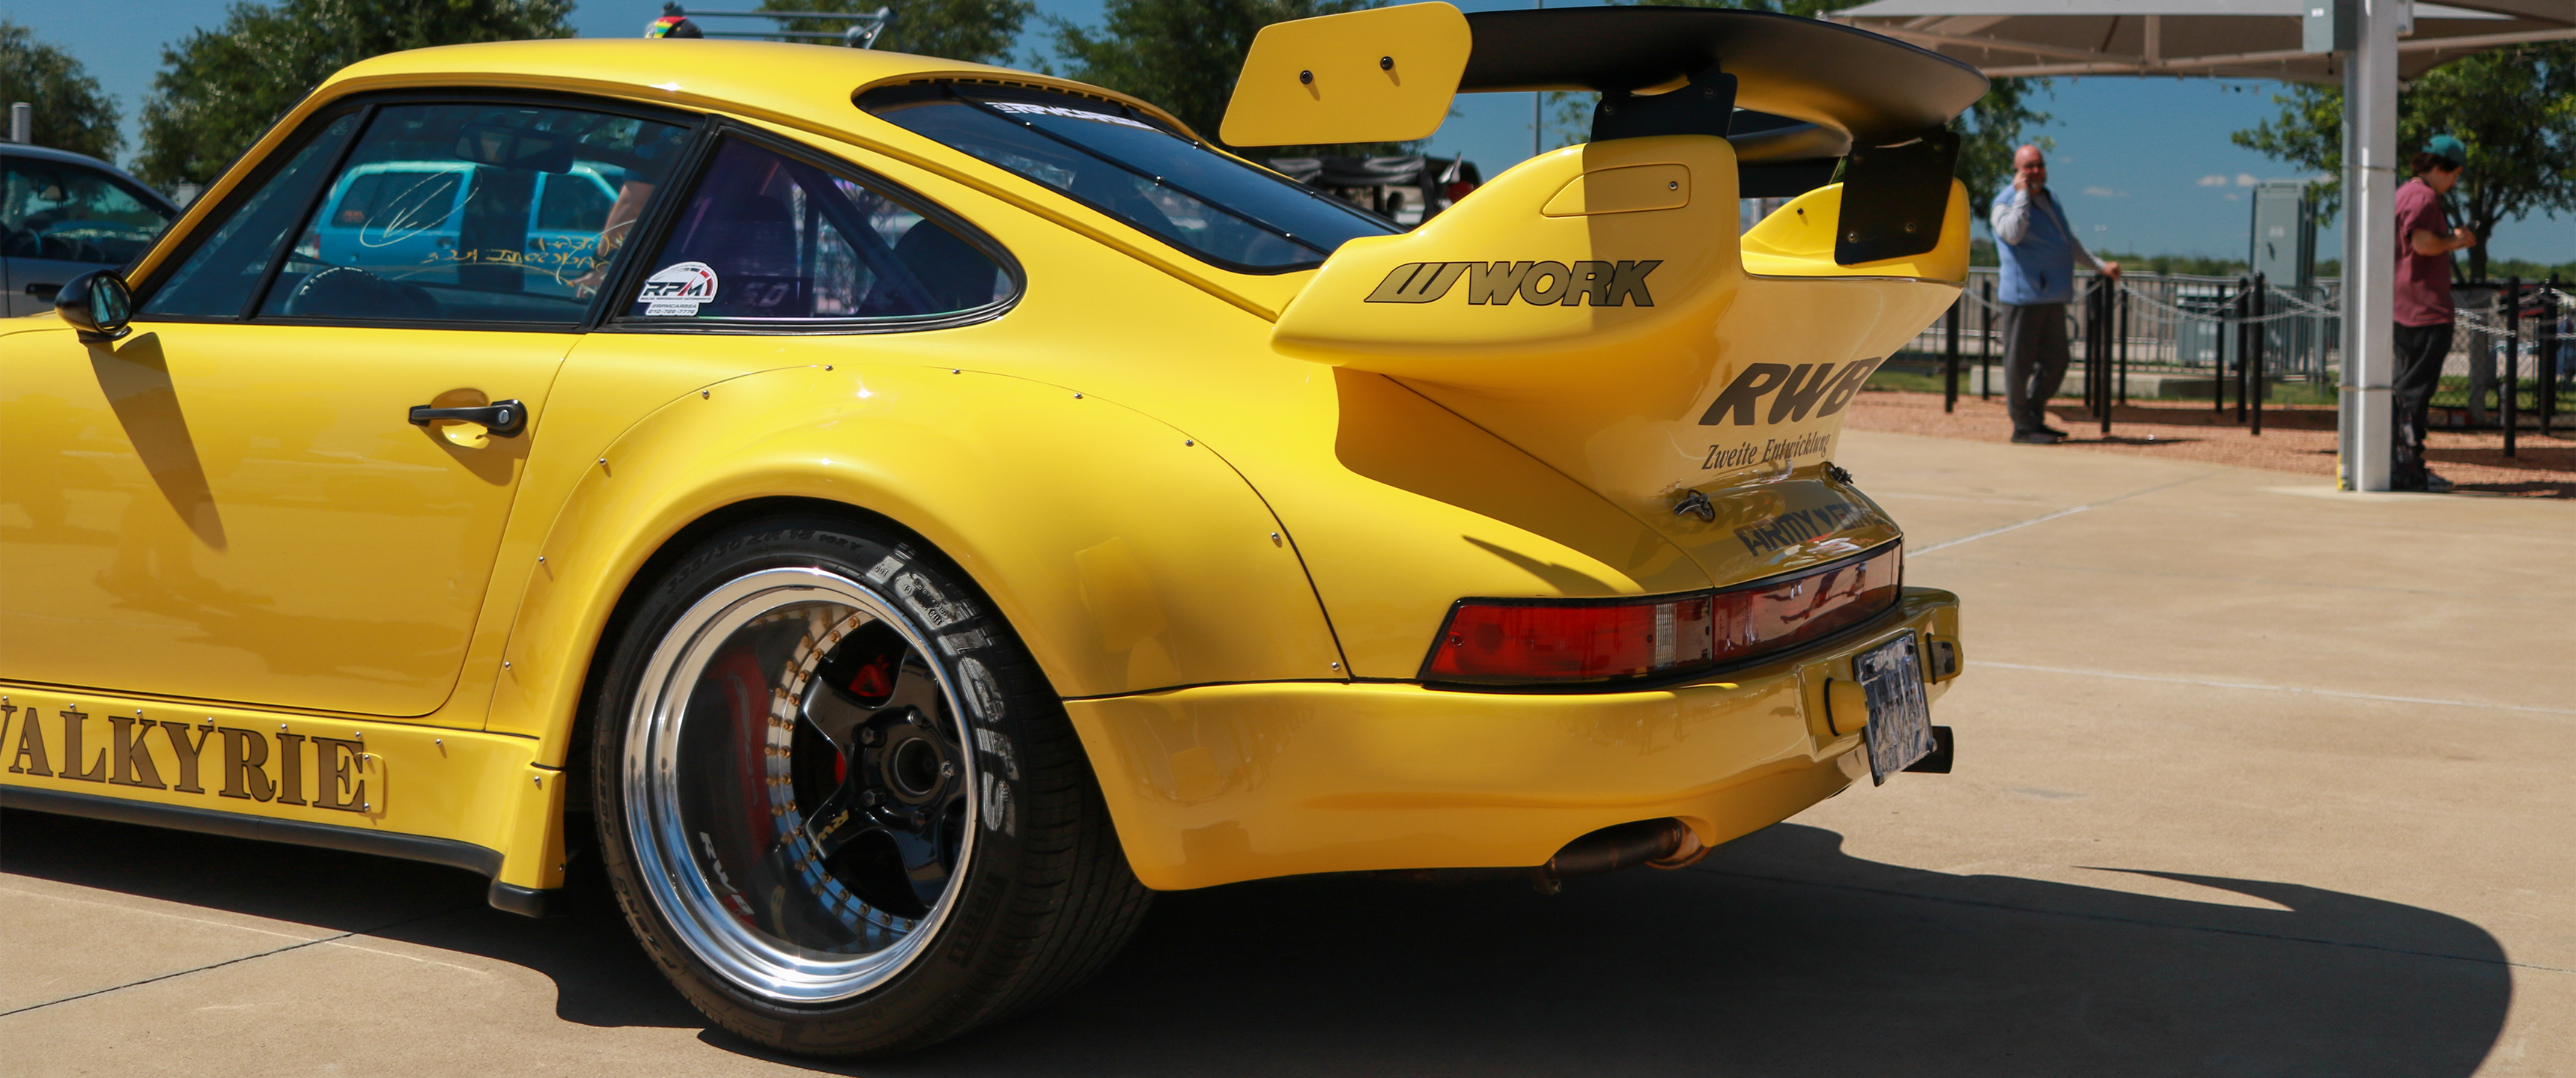 Supercars Classic Car Porsche 911 RWB Car Rear View Licence Plates Yellow Cars 3440x1440